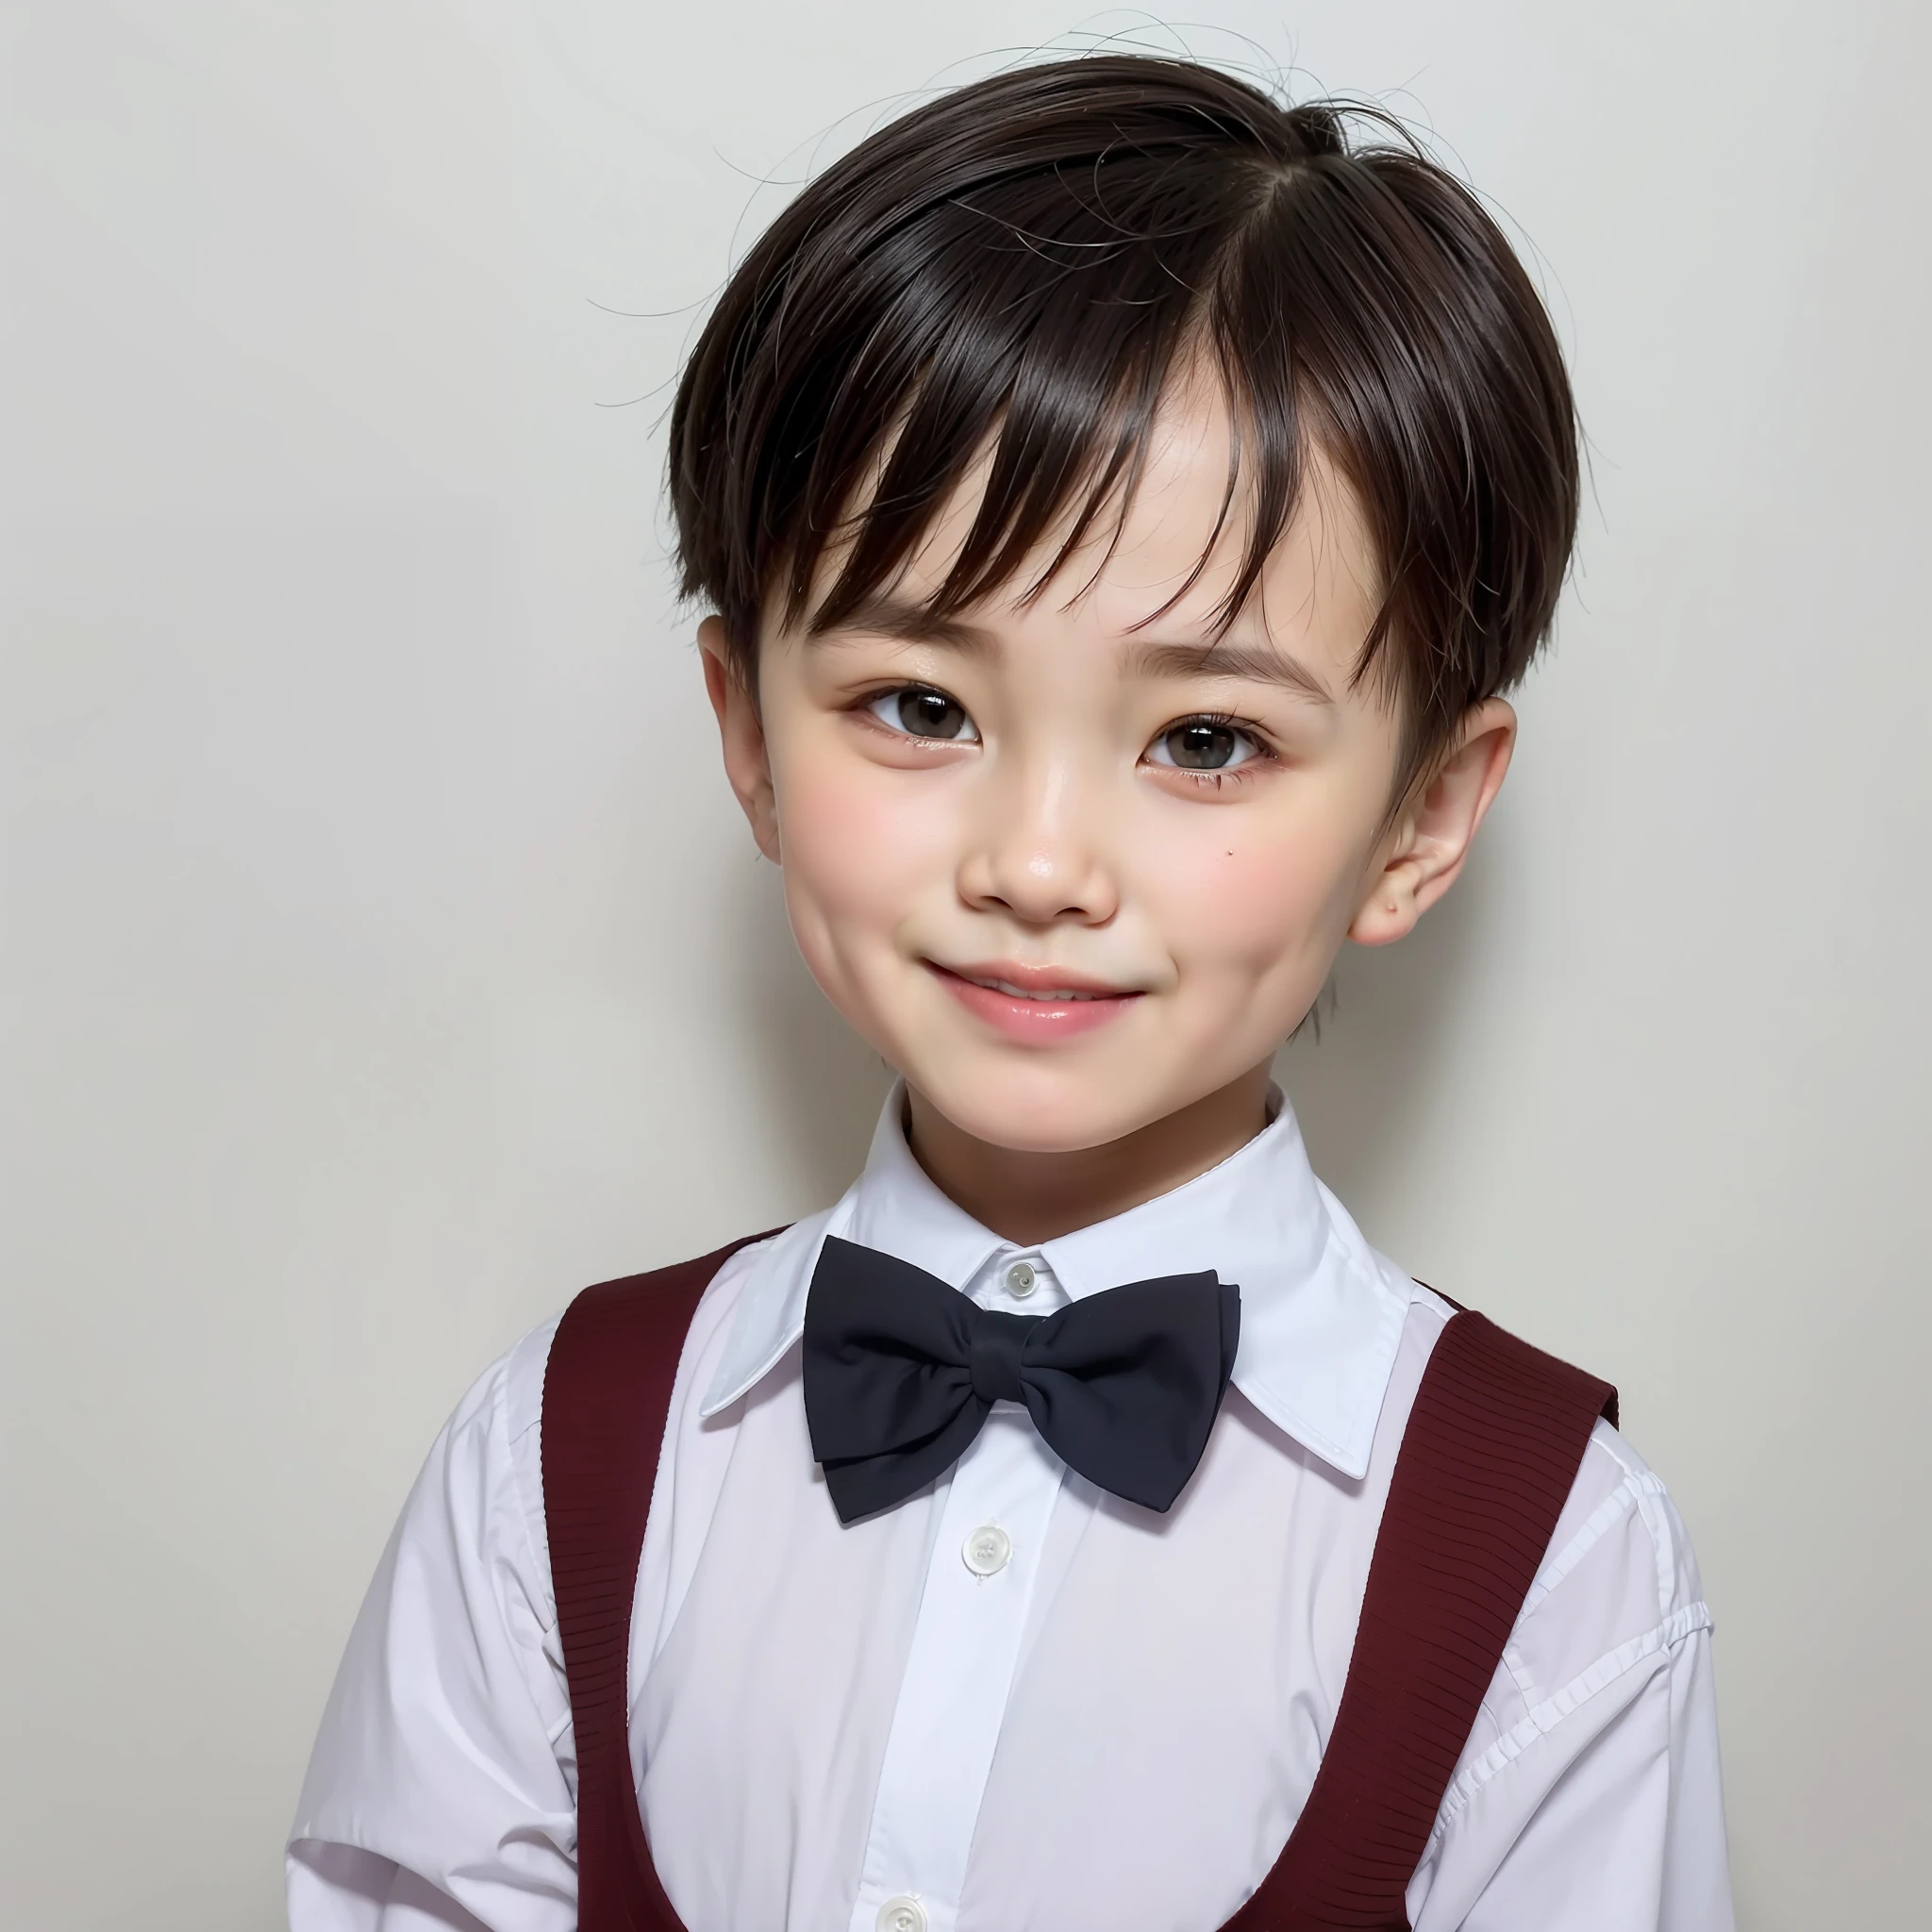 الطراز الحديث, خلفية بيضاء, صورة هوية الطفل الصيني, وسيم, صبي مبتسم, عيون سوداء, رأس مسطح, ربطة القوس